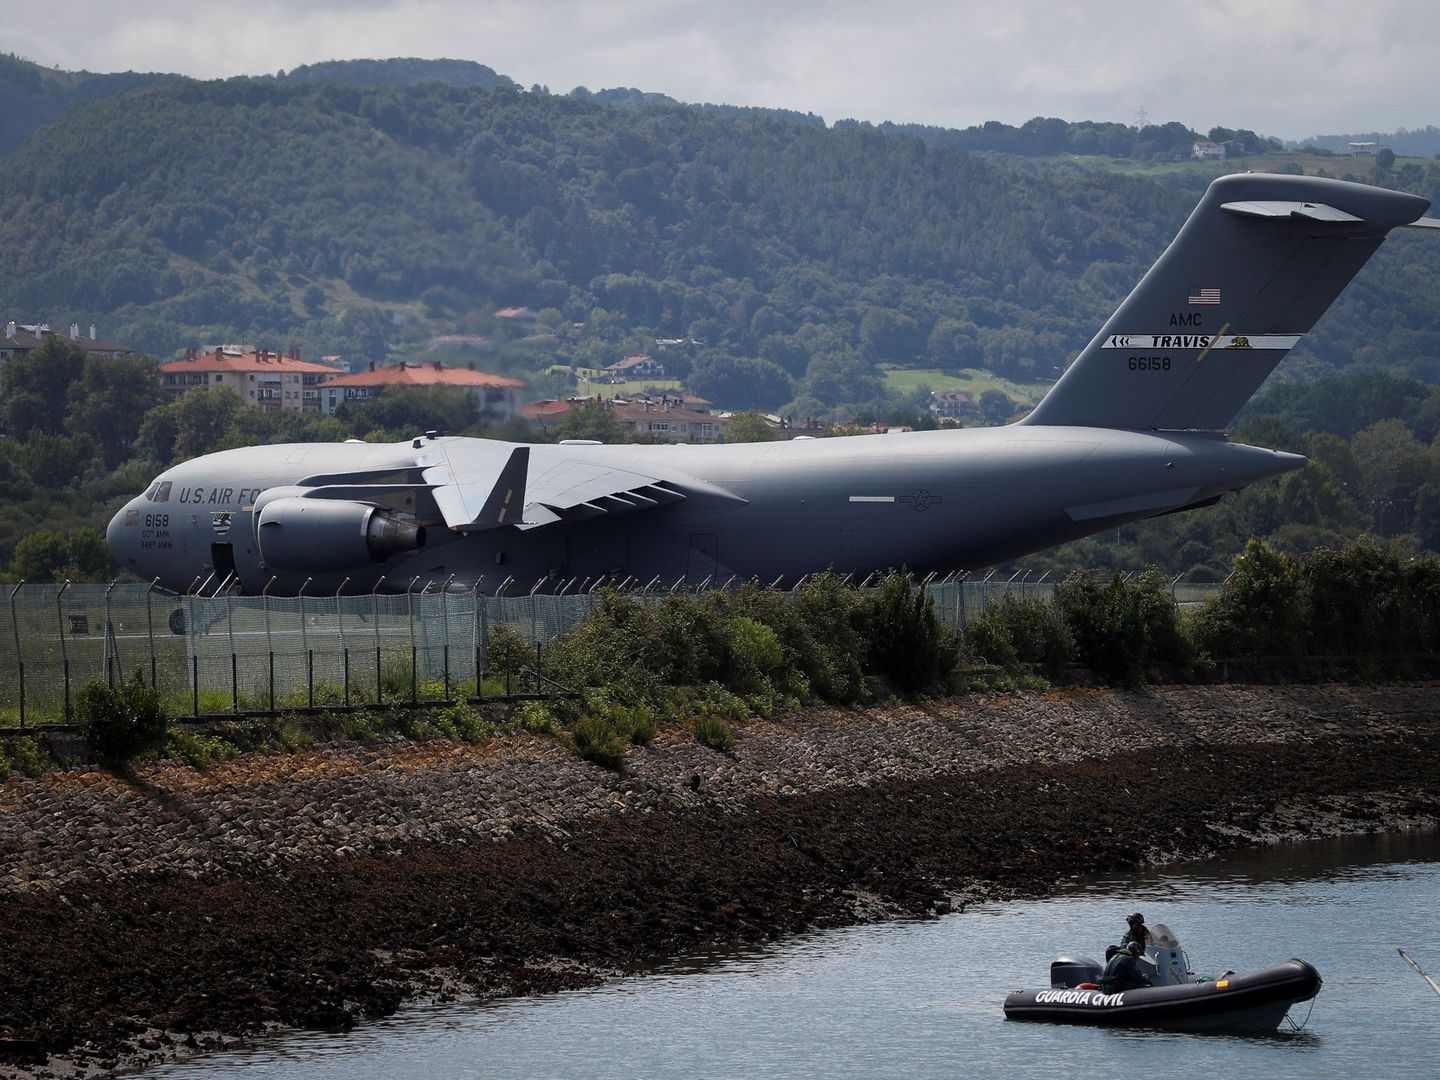 El avión militar estadounidense en el aeropuerto de Hondarribia bajo la vigilancia de dos agentes de la Guardia Civil en una lancha. (EFE)